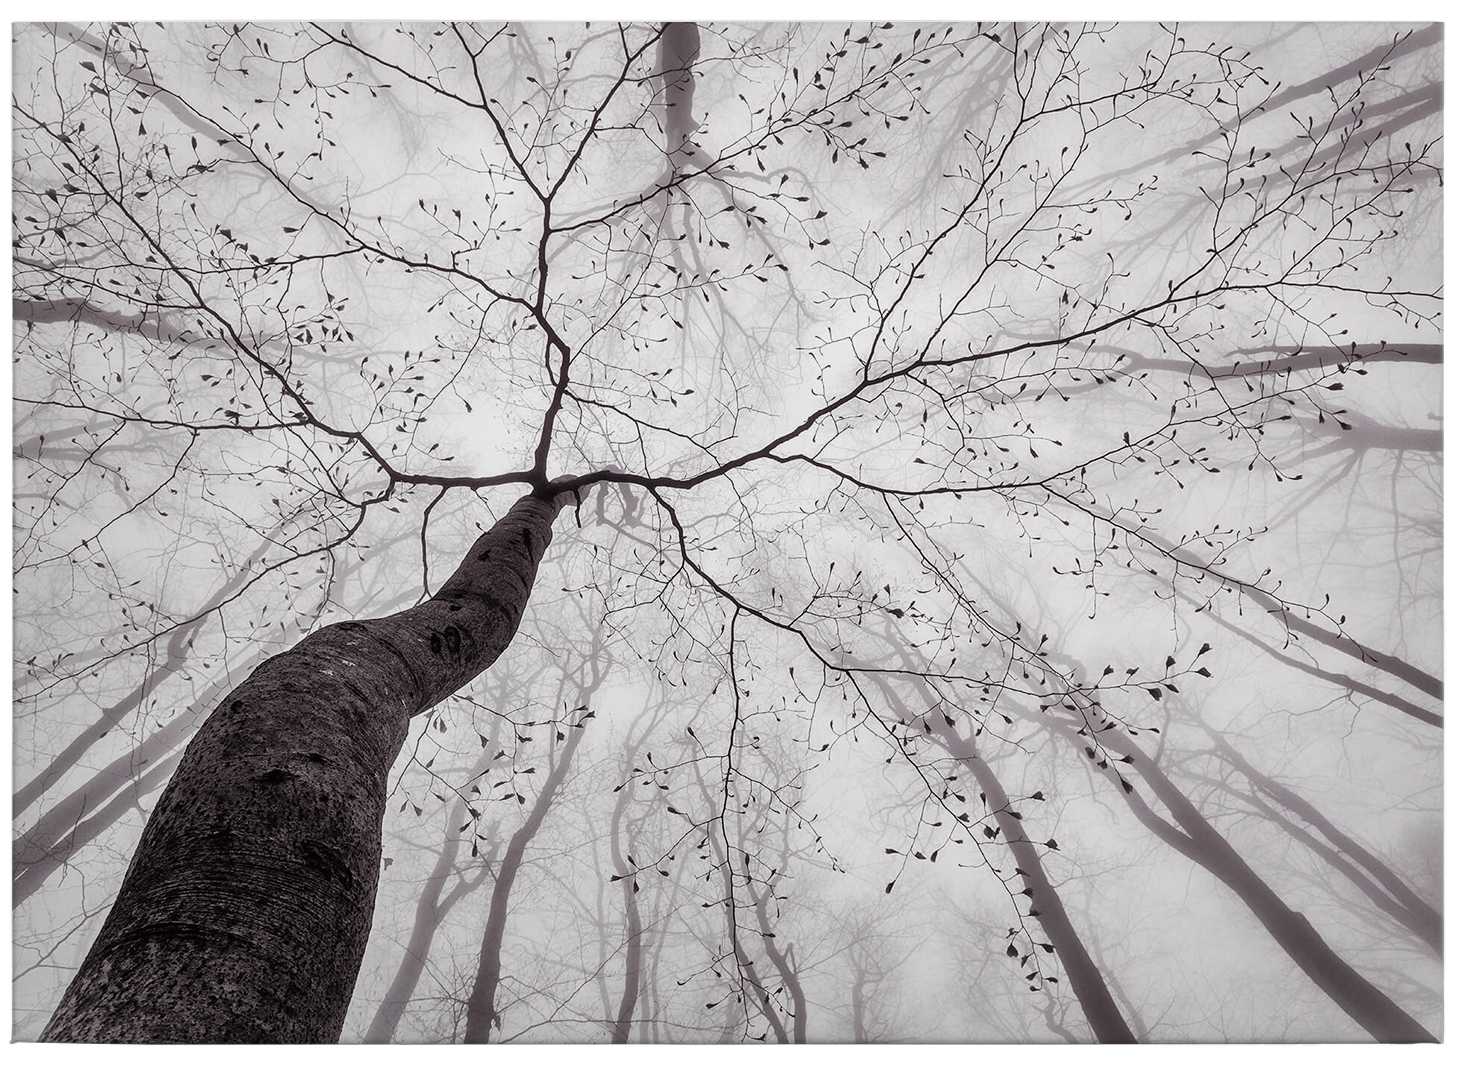             Quadro su tela in bianco e nero Cime degli alberi nella nebbia - 0,70 m x 0,50 m
        